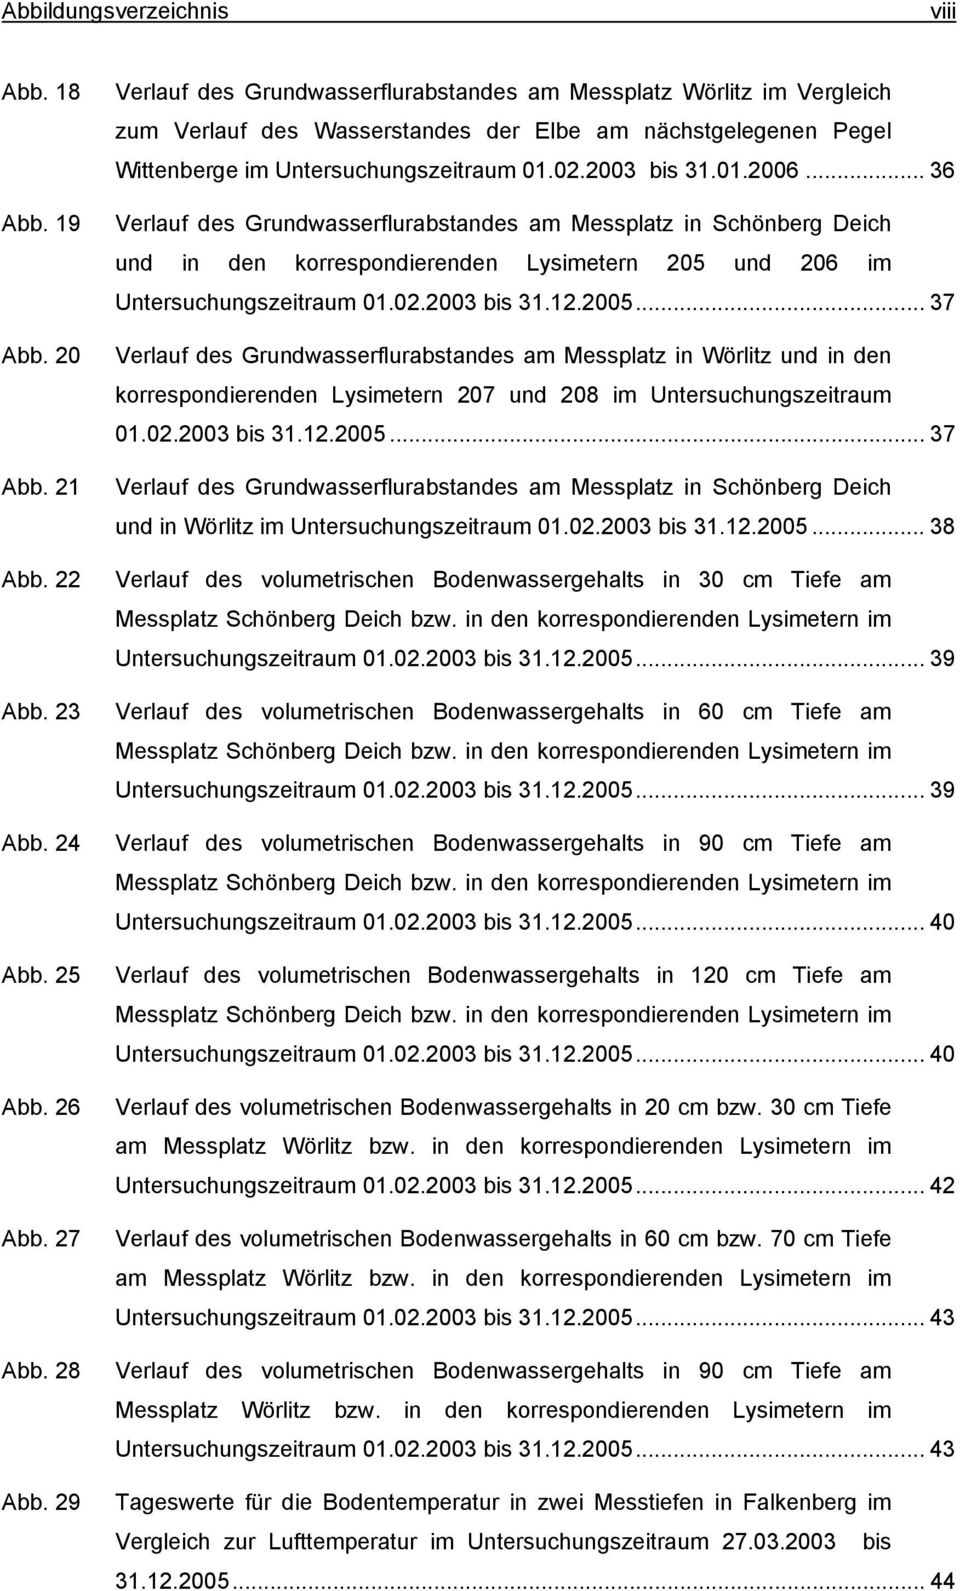 .. 36 Verlauf des Grundwasserflurabstandes am Messplatz in Schönberg Deich und in den korrespondierenden Lysimetern 205 und 206 im Untersuchungszeitraum 01.02.2003 bis 31.12.2005.